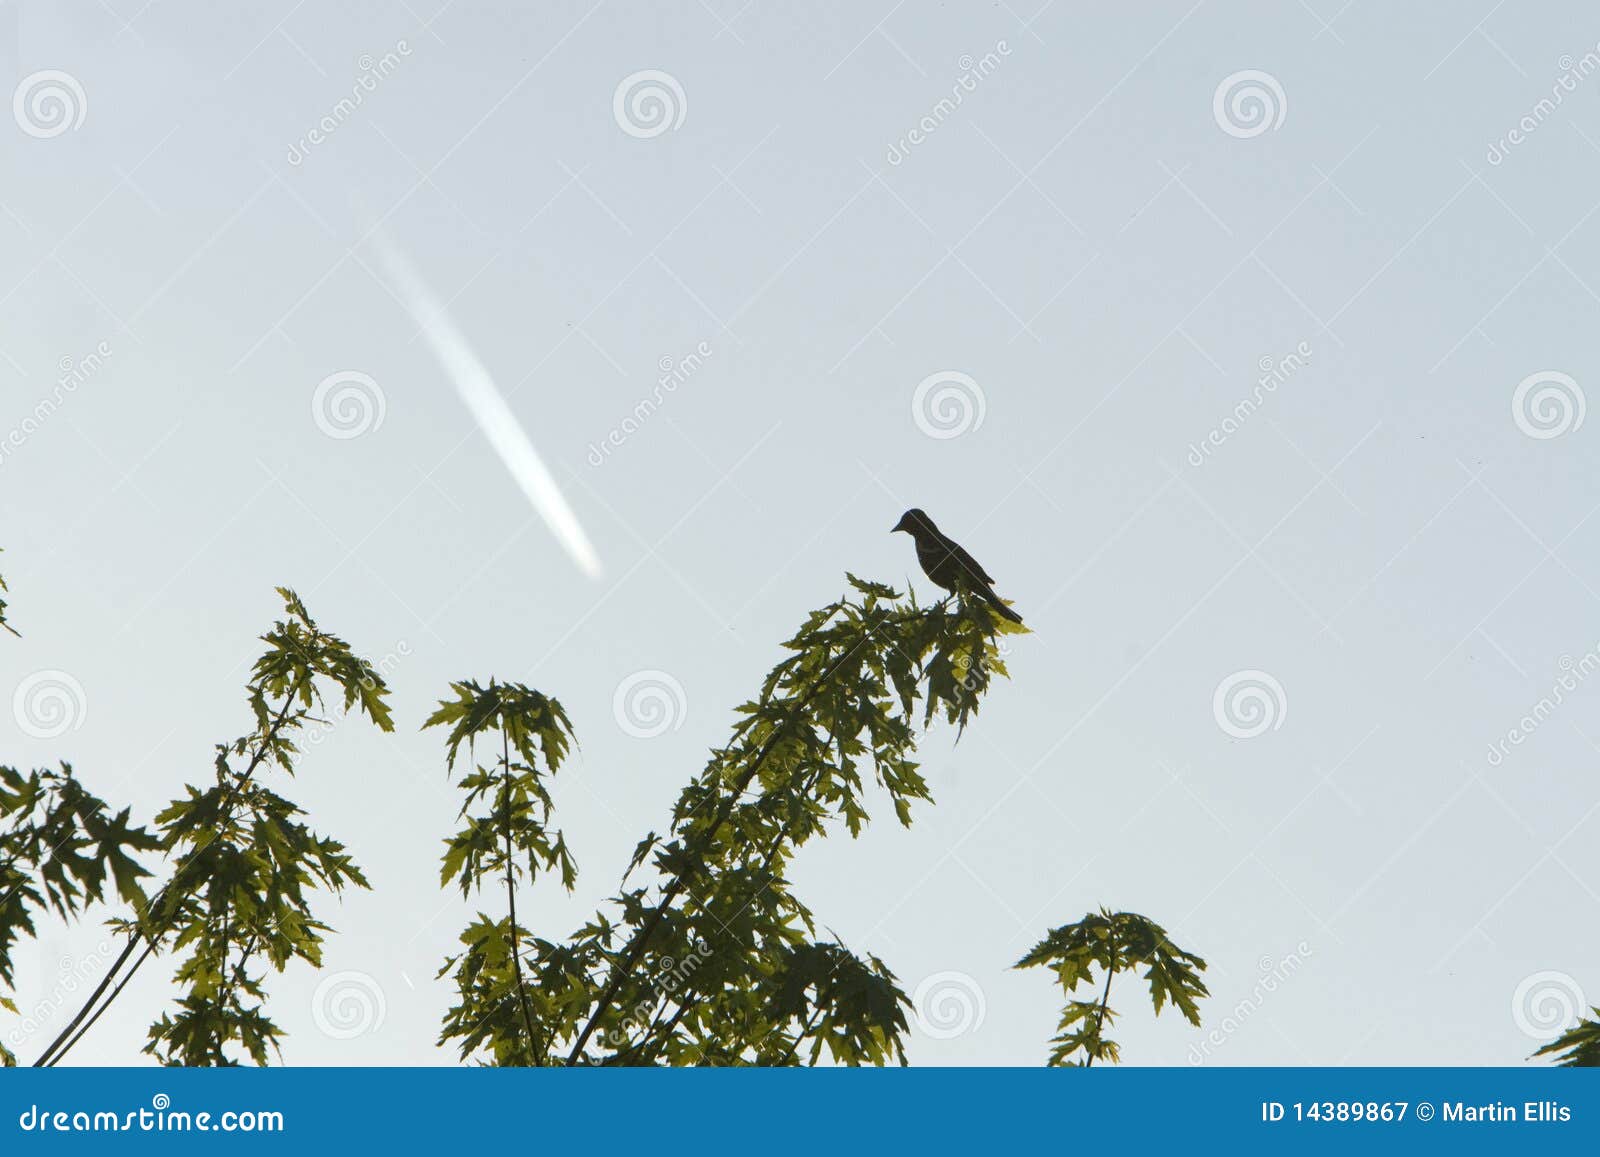 blackbird and jet vapor